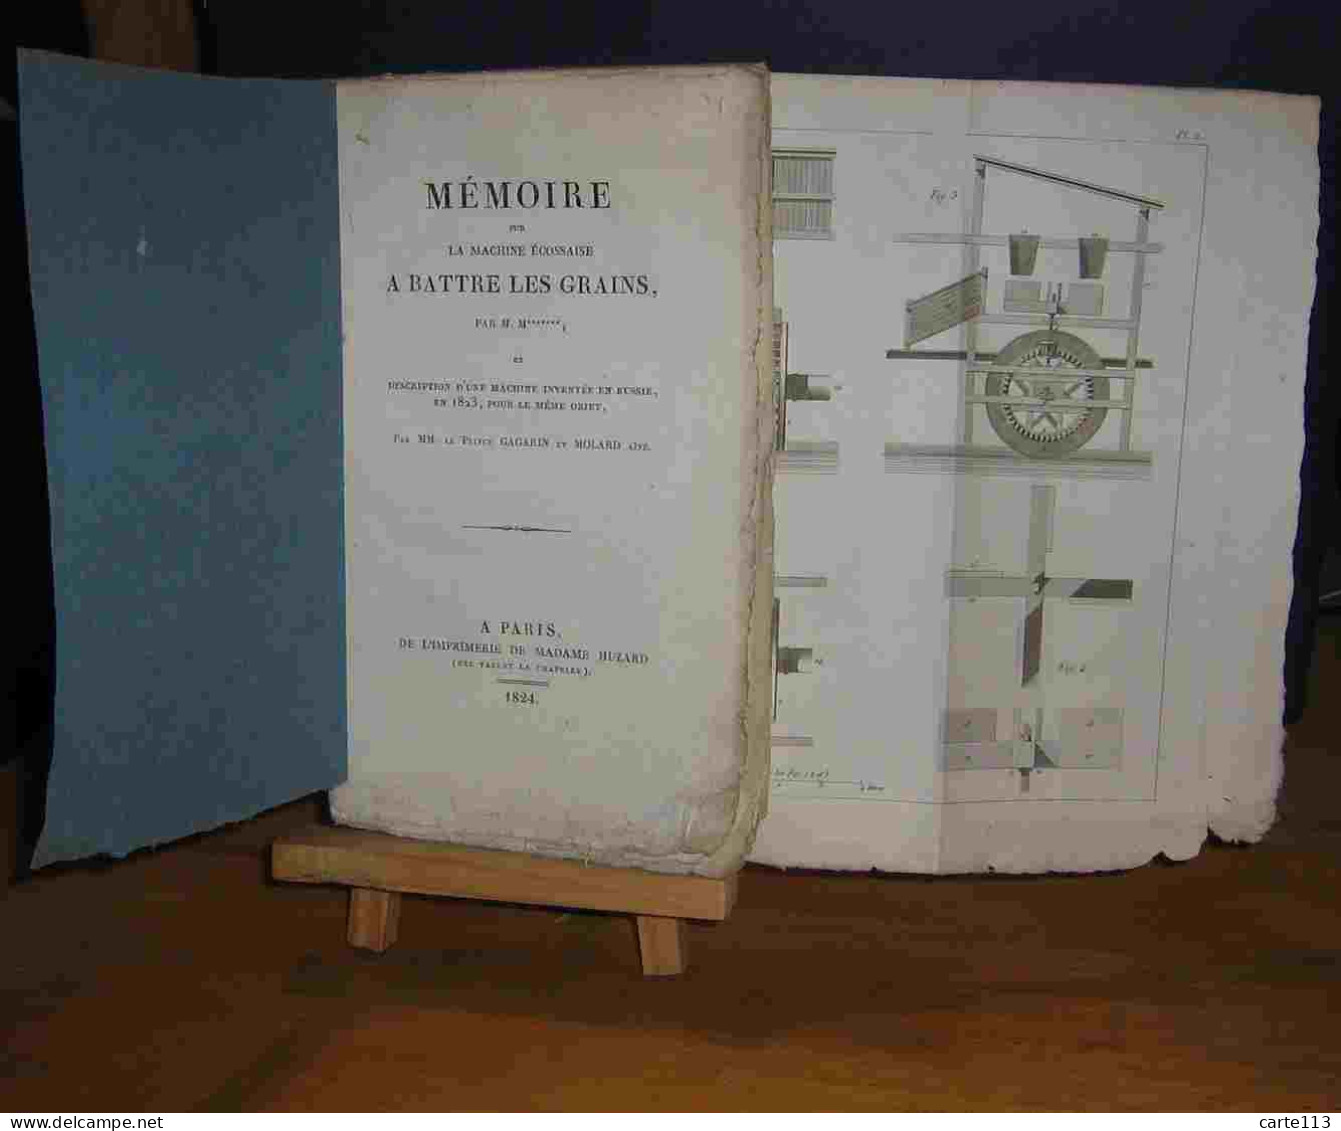 GAGARIN Prince - MOLARD Aine - MEMOIRE SUR LA MACHINE ECOSSAISE A BATTRE LES GRAINS - 1801-1900